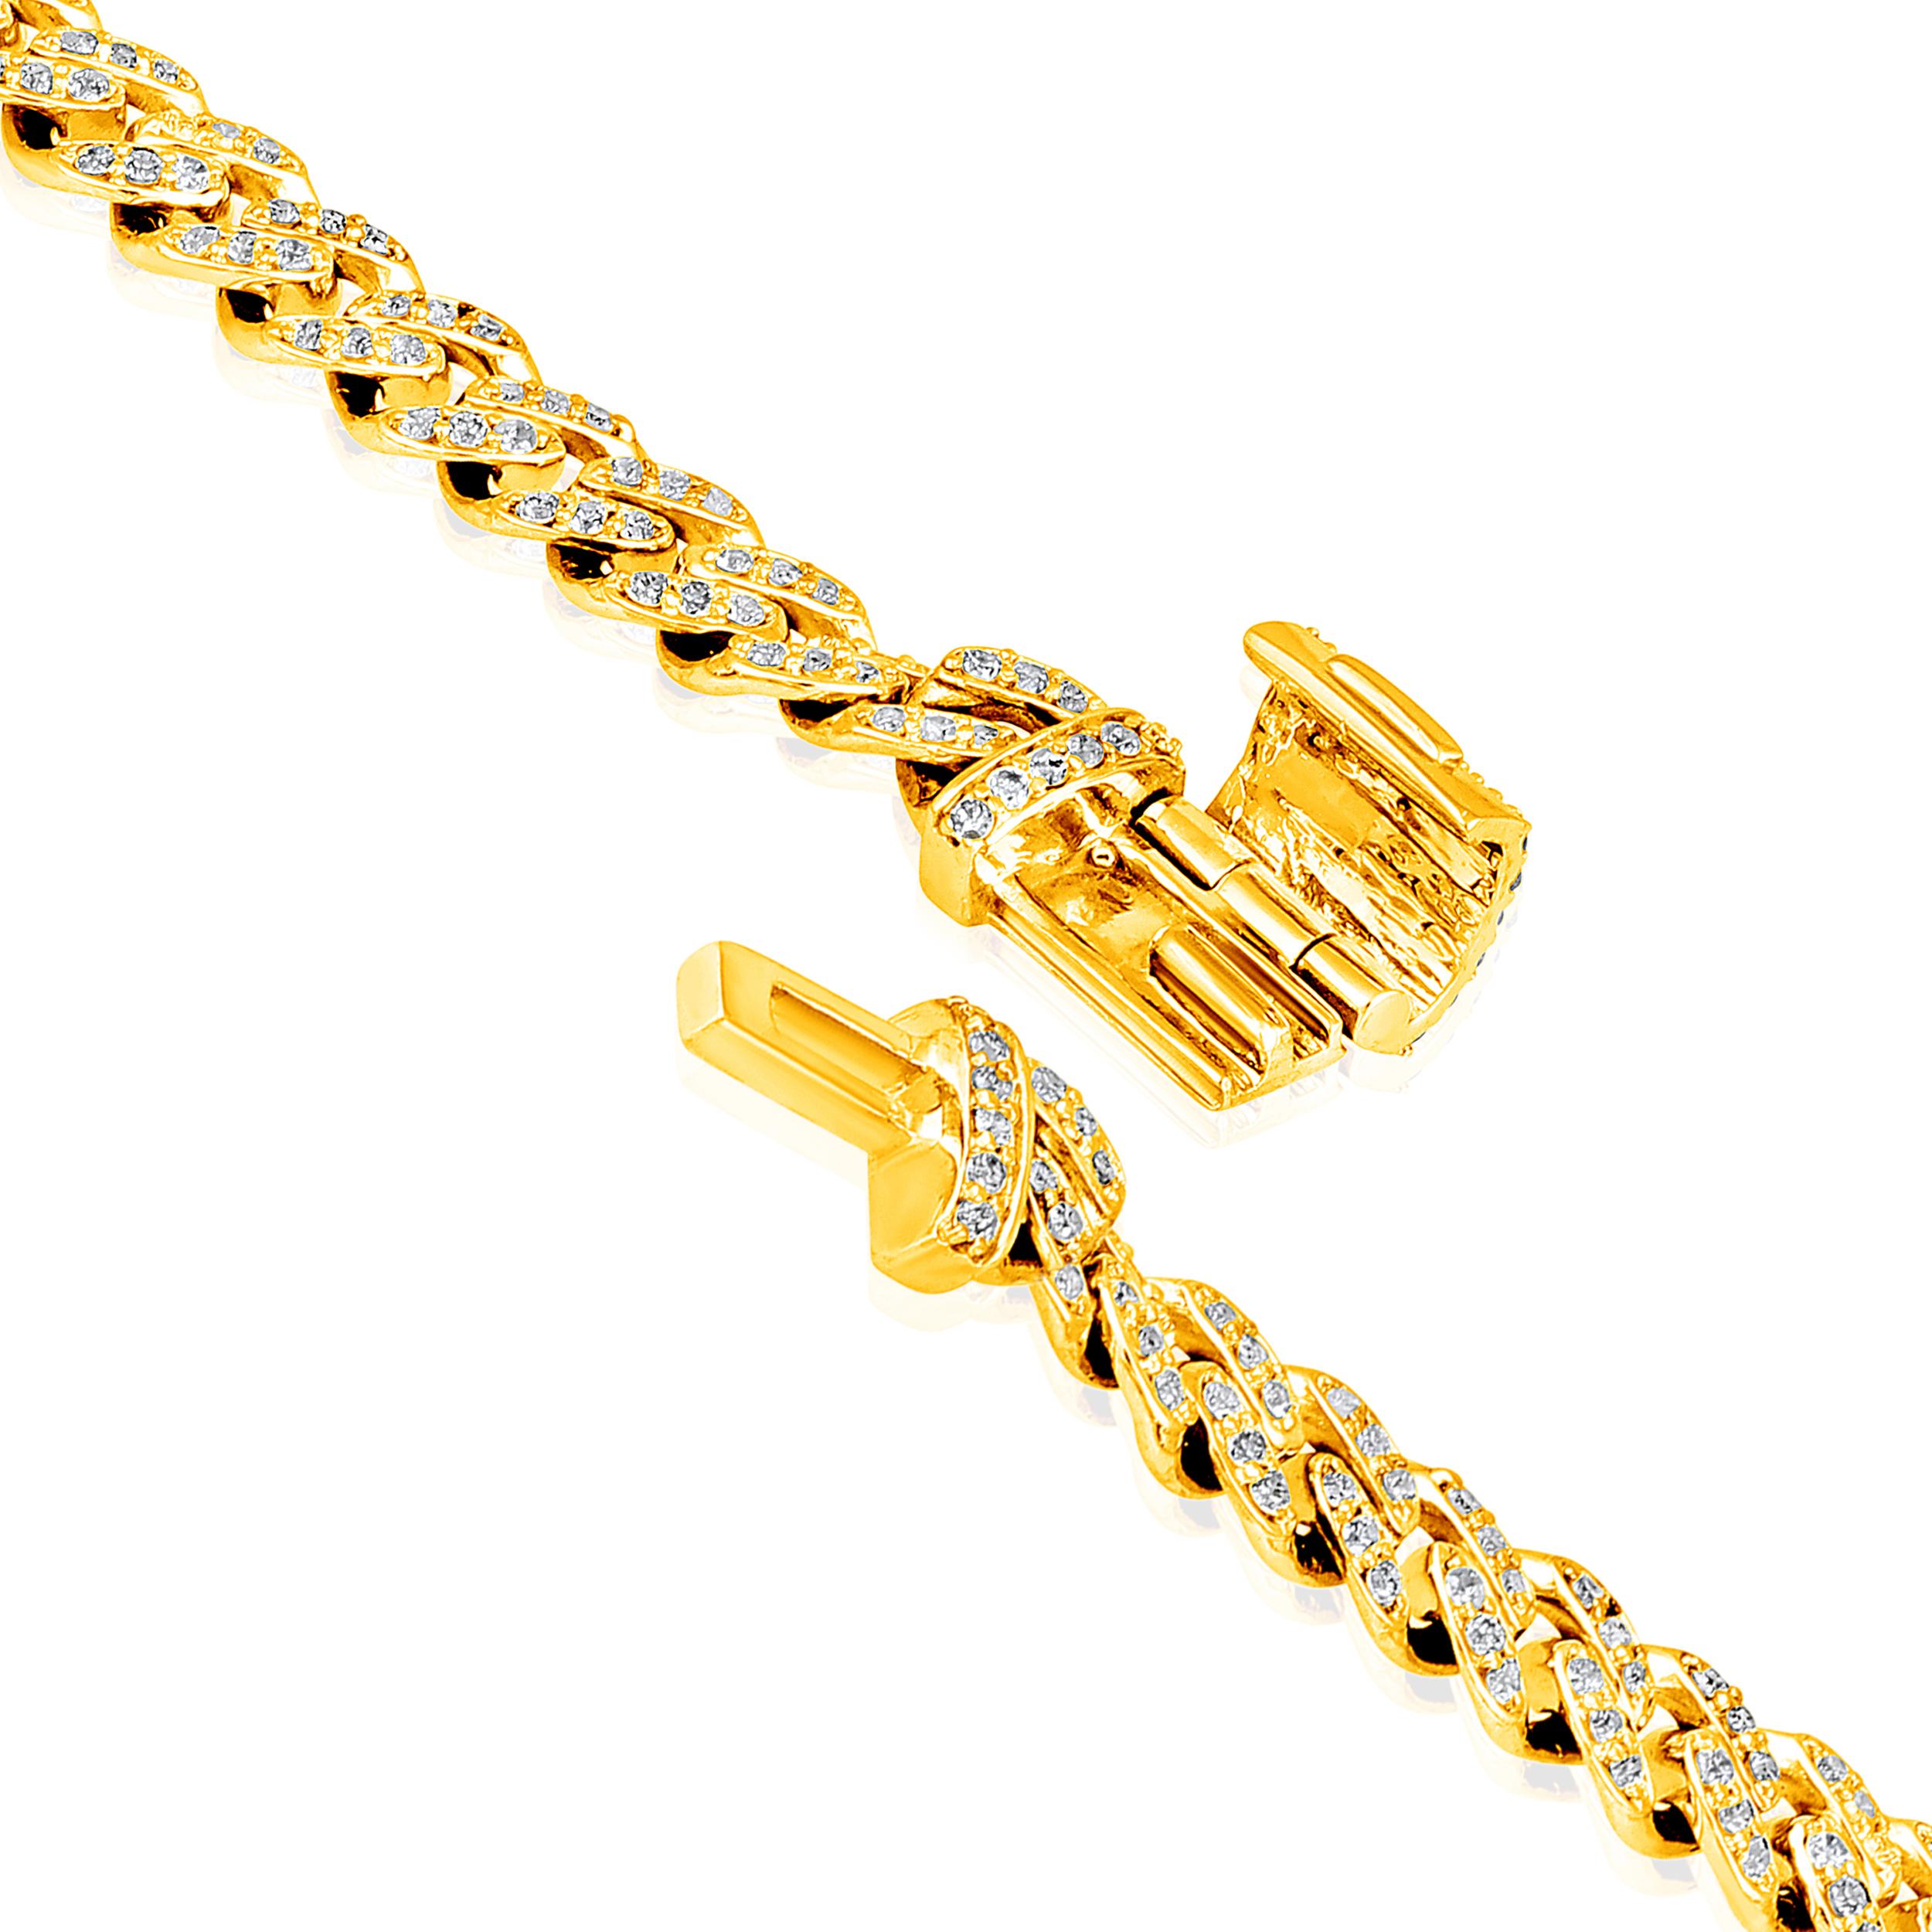 Fabriqué en or jaune 10K de 5,94 grammes, le bracelet contient 432 pierres de diamants ronds d'un total de 0,82 carat de couleur F-G et de carat I1-I2. La longueur du bracelet est de 7 pouces.
Ce bijou sera confectionné par nos artisans qualifiés